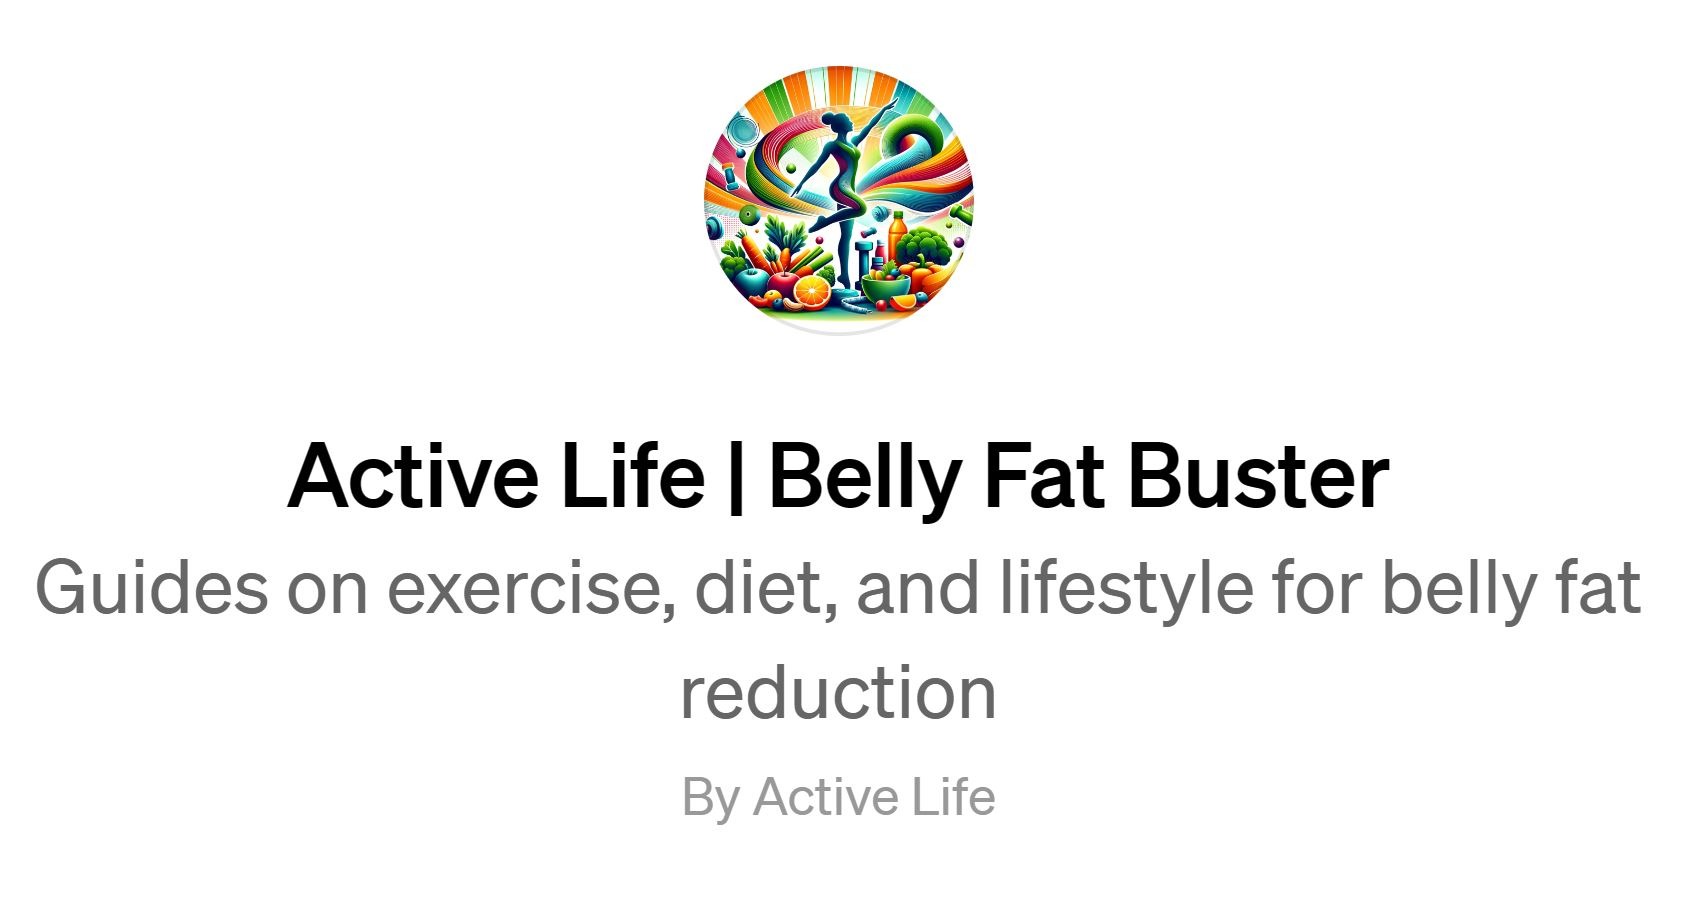 Bauchfett reduzieren - ganz einfach mit BELLY FAT BUSTER - die geniale GPT App von Active Life